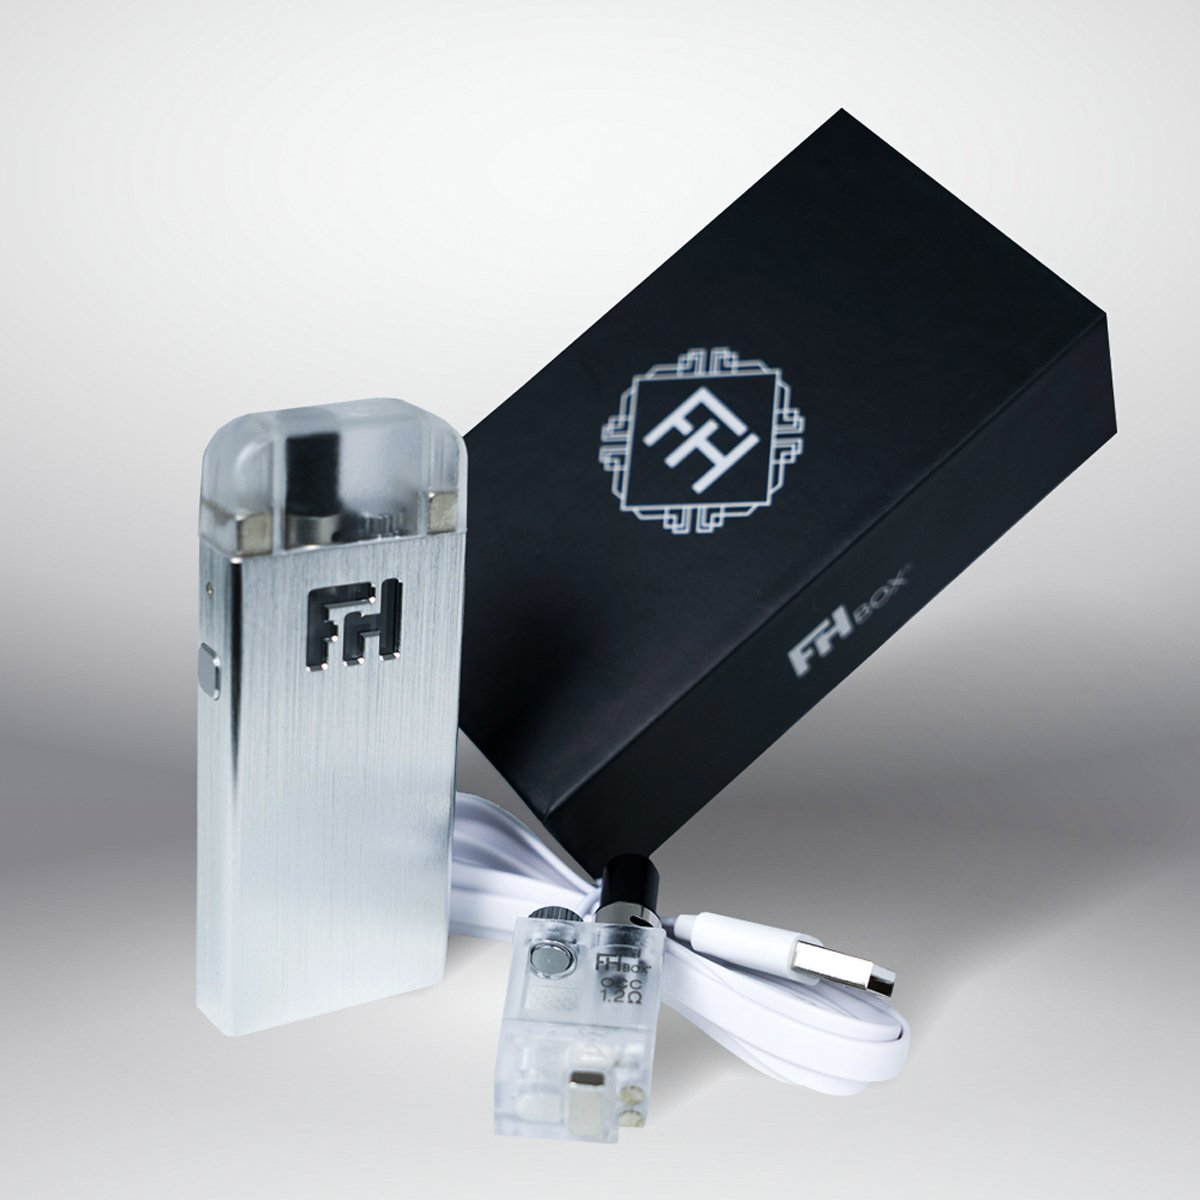 FHBox - Silver edition